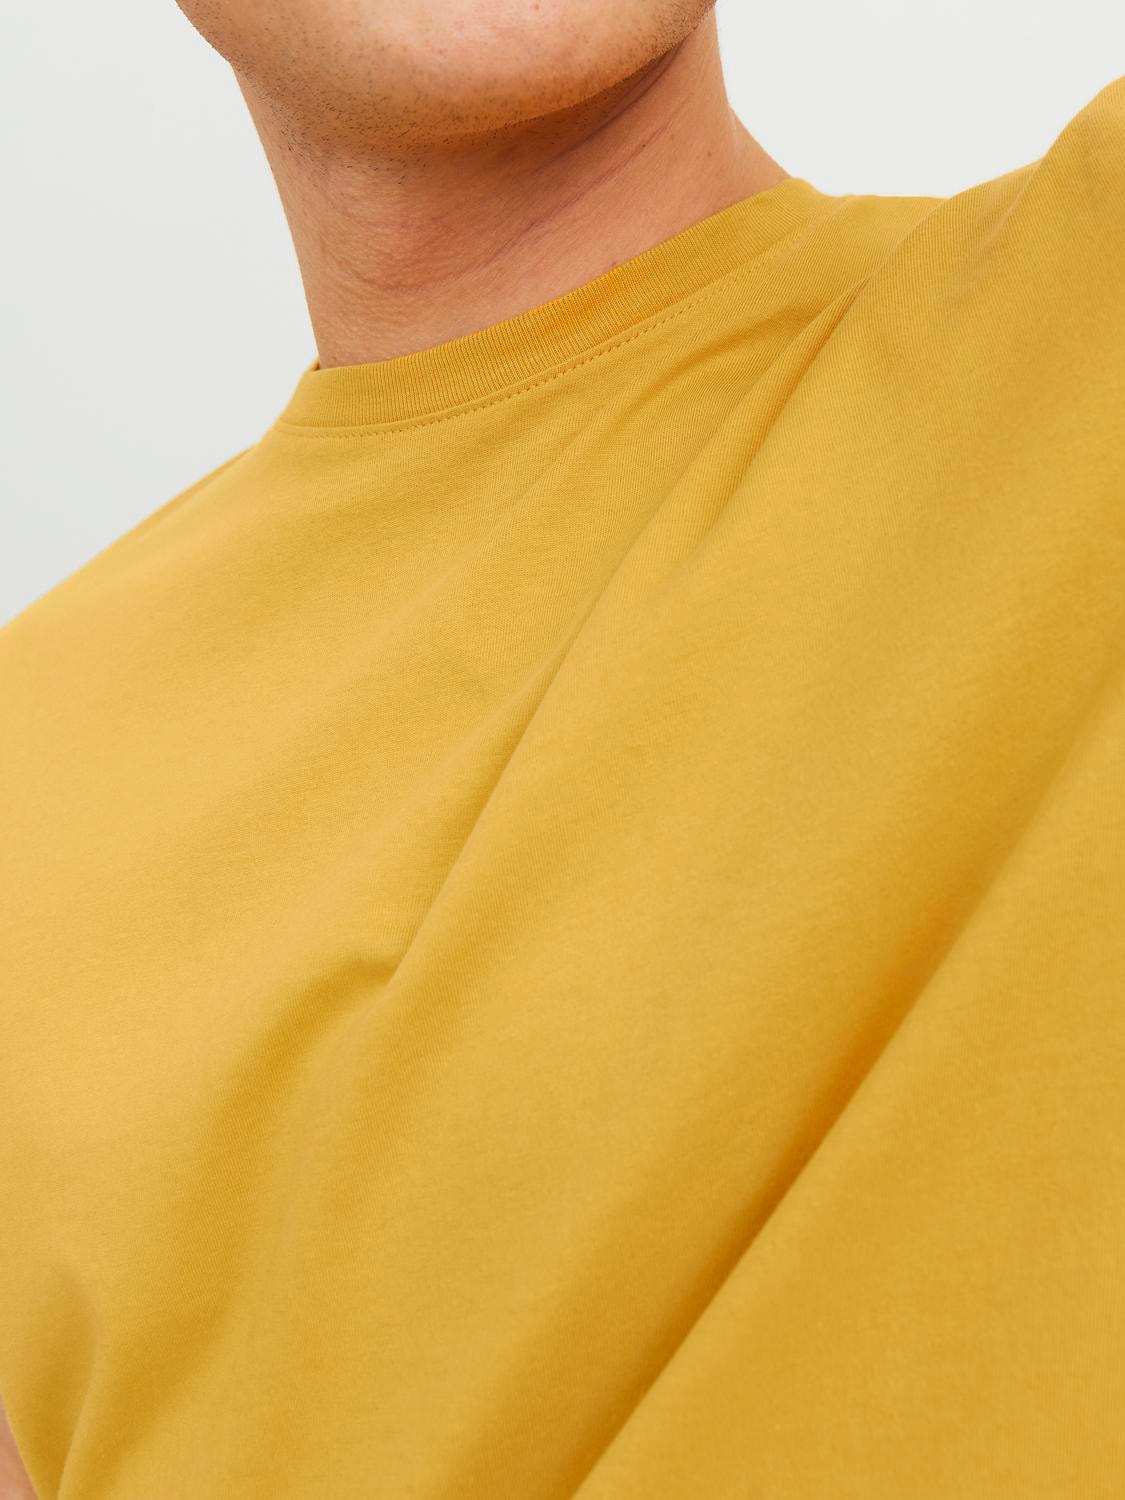 Jack & Jones Einfarbig Rundhals T-shirt -Honey Gold - 12156101